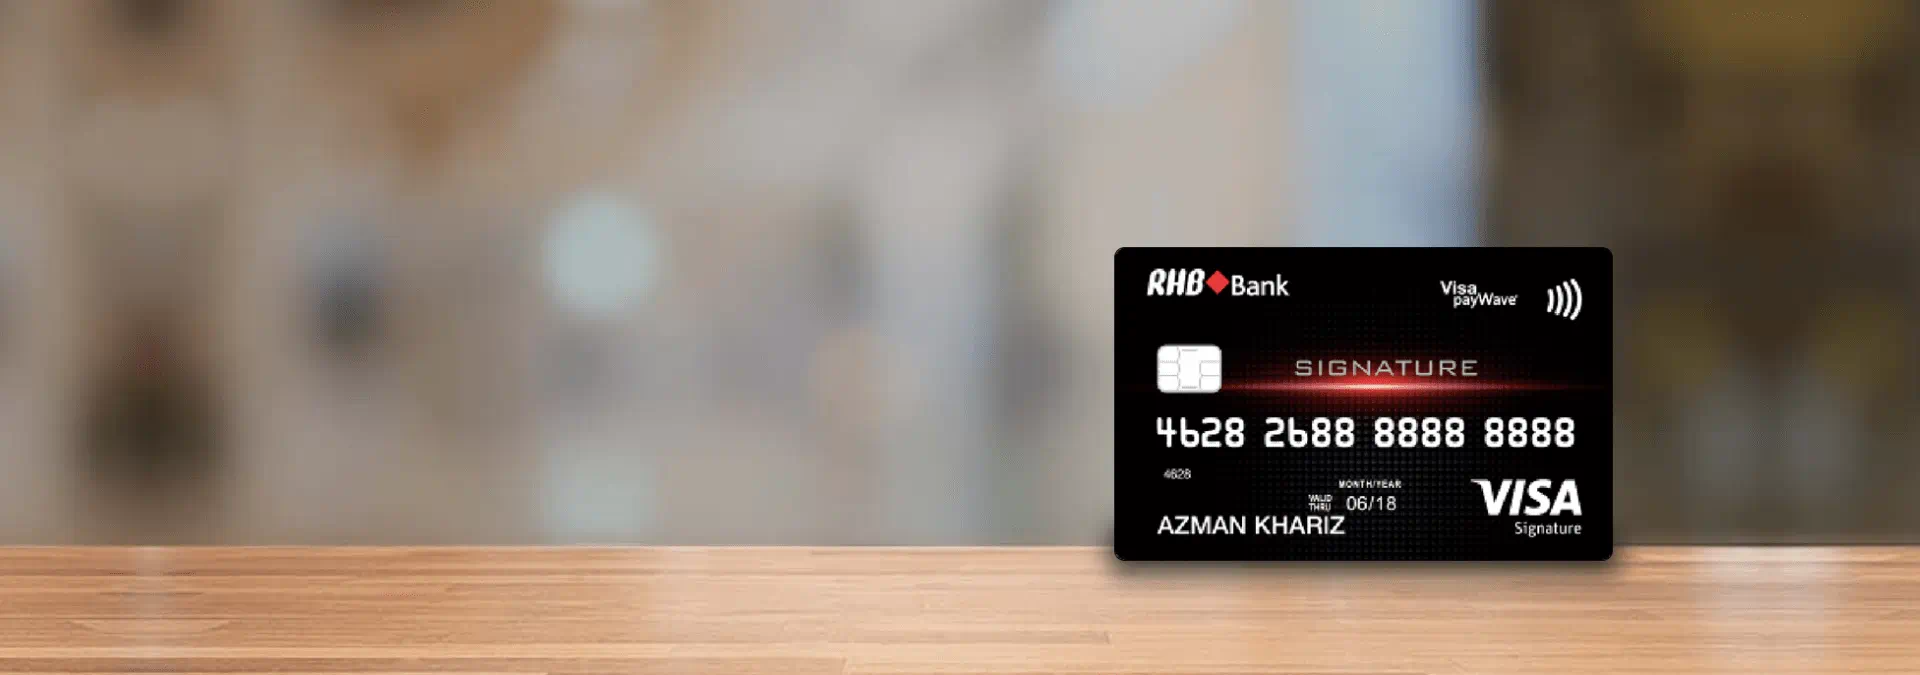 rhb-visa-signature-credit-card-banner